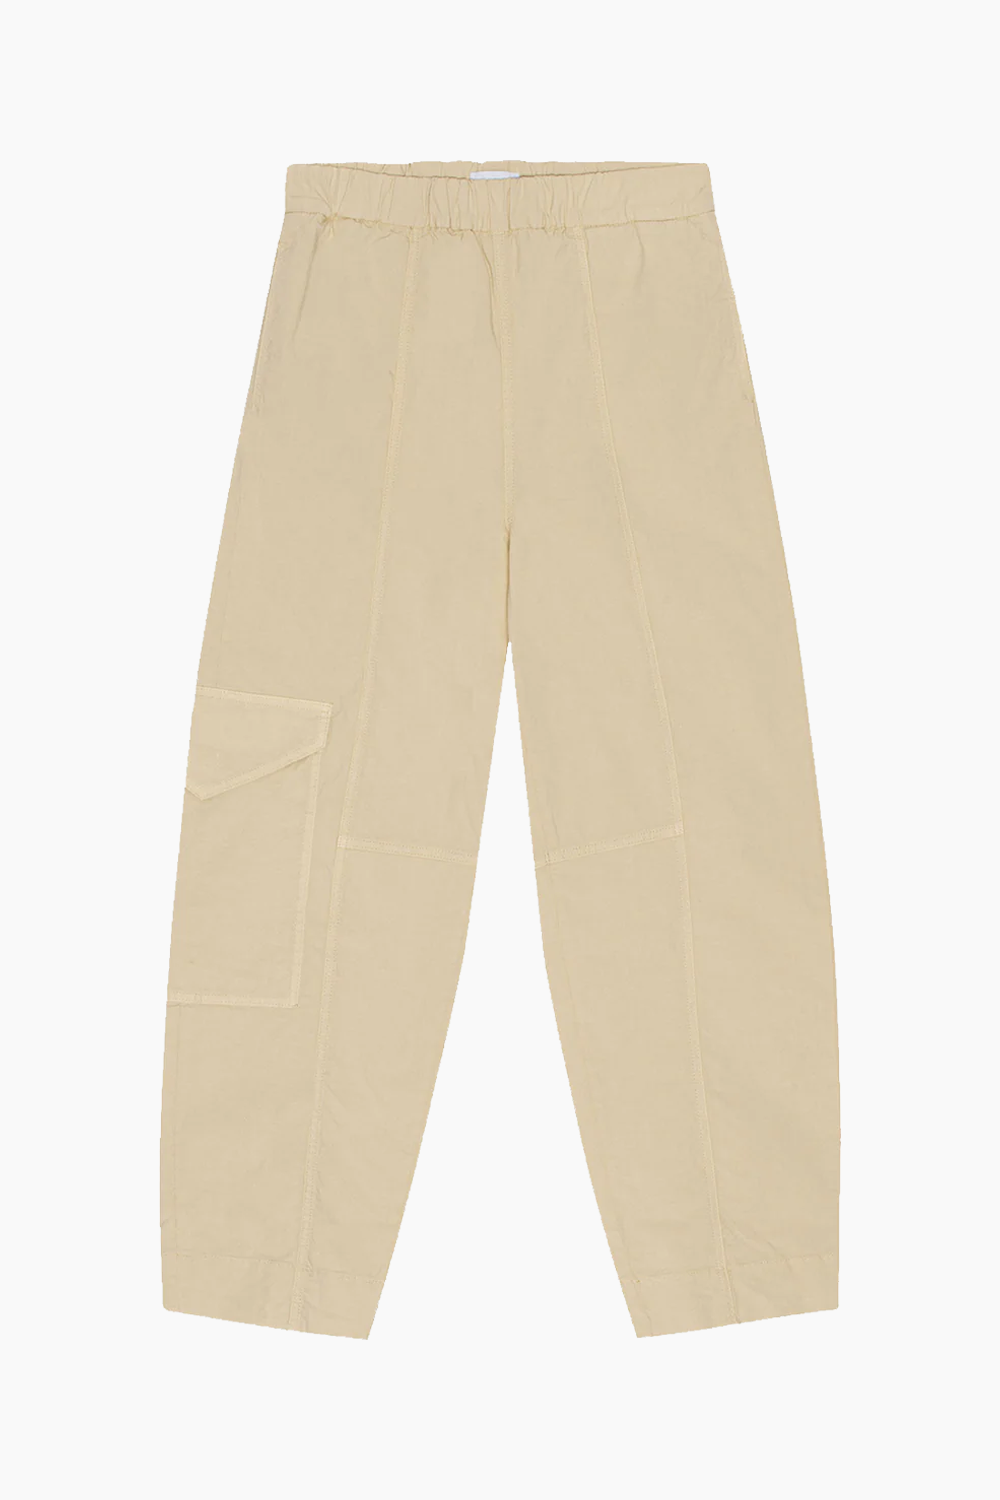 Se Washed Cotton Canvas Elasticated Curve Pants F8073 - Pale Khaki - GANNI - Beige XS hos QNTS.dk